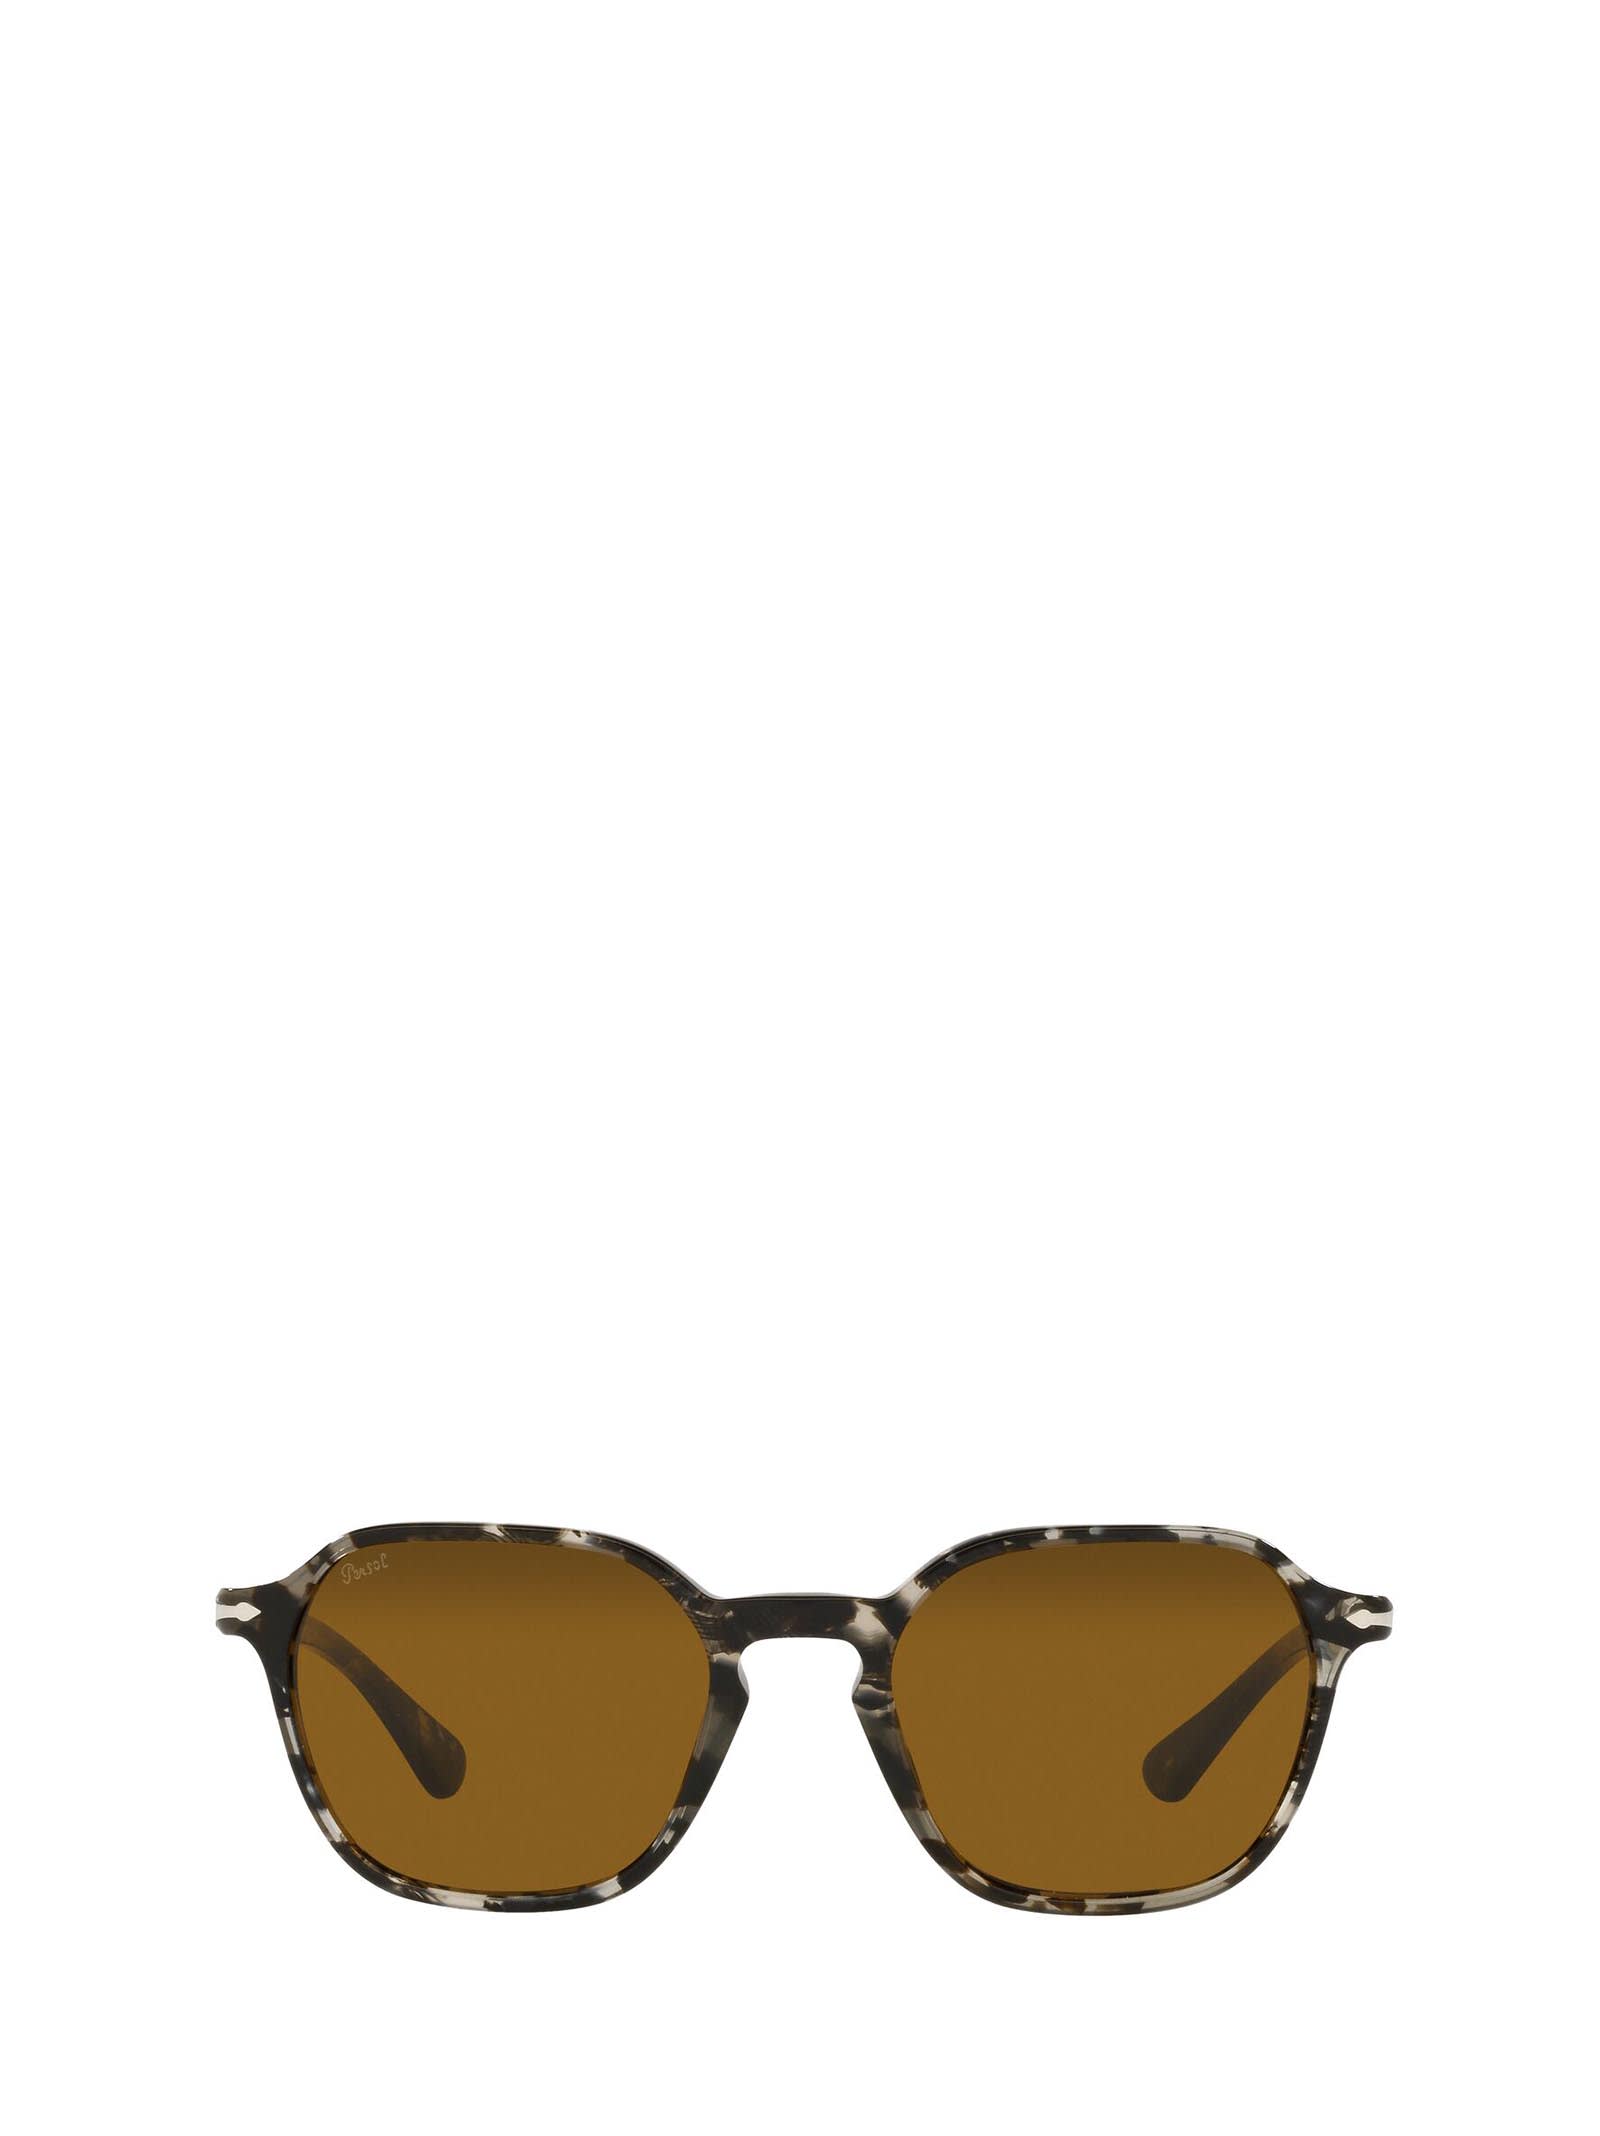 Persol Persol Po3256s Tortoise Grey Black Sunglasses